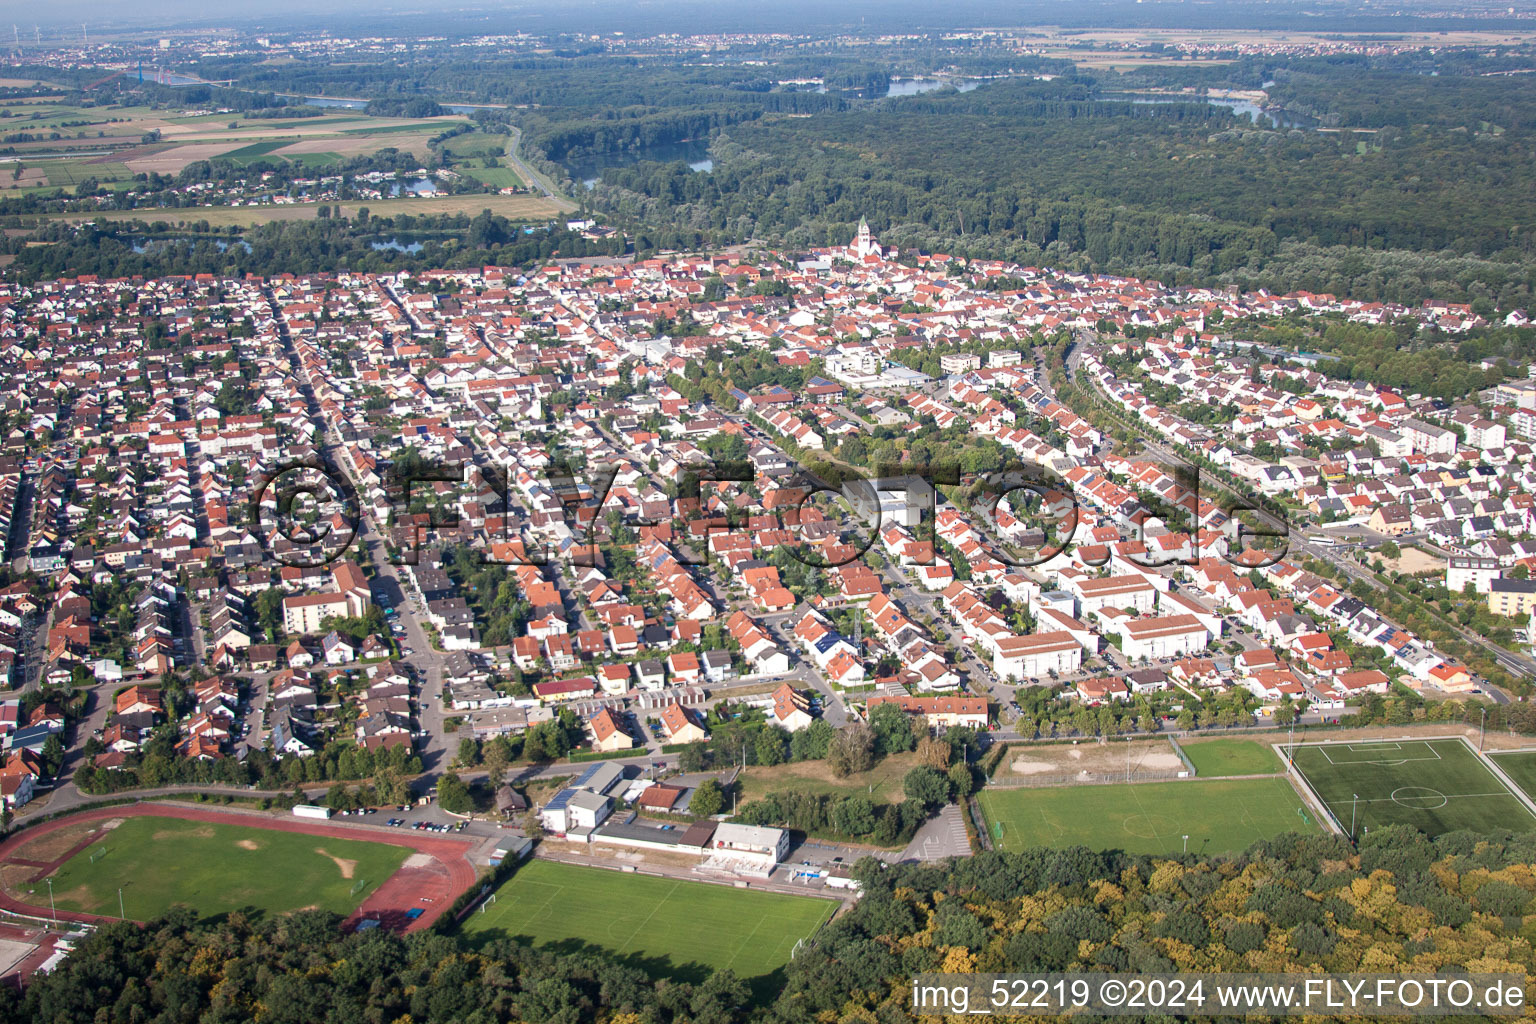 Luftbild von Ortsansicht der Straßen und Häuser der Wohngebiete in Ketsch im Bundesland Baden-Württemberg, Deutschland